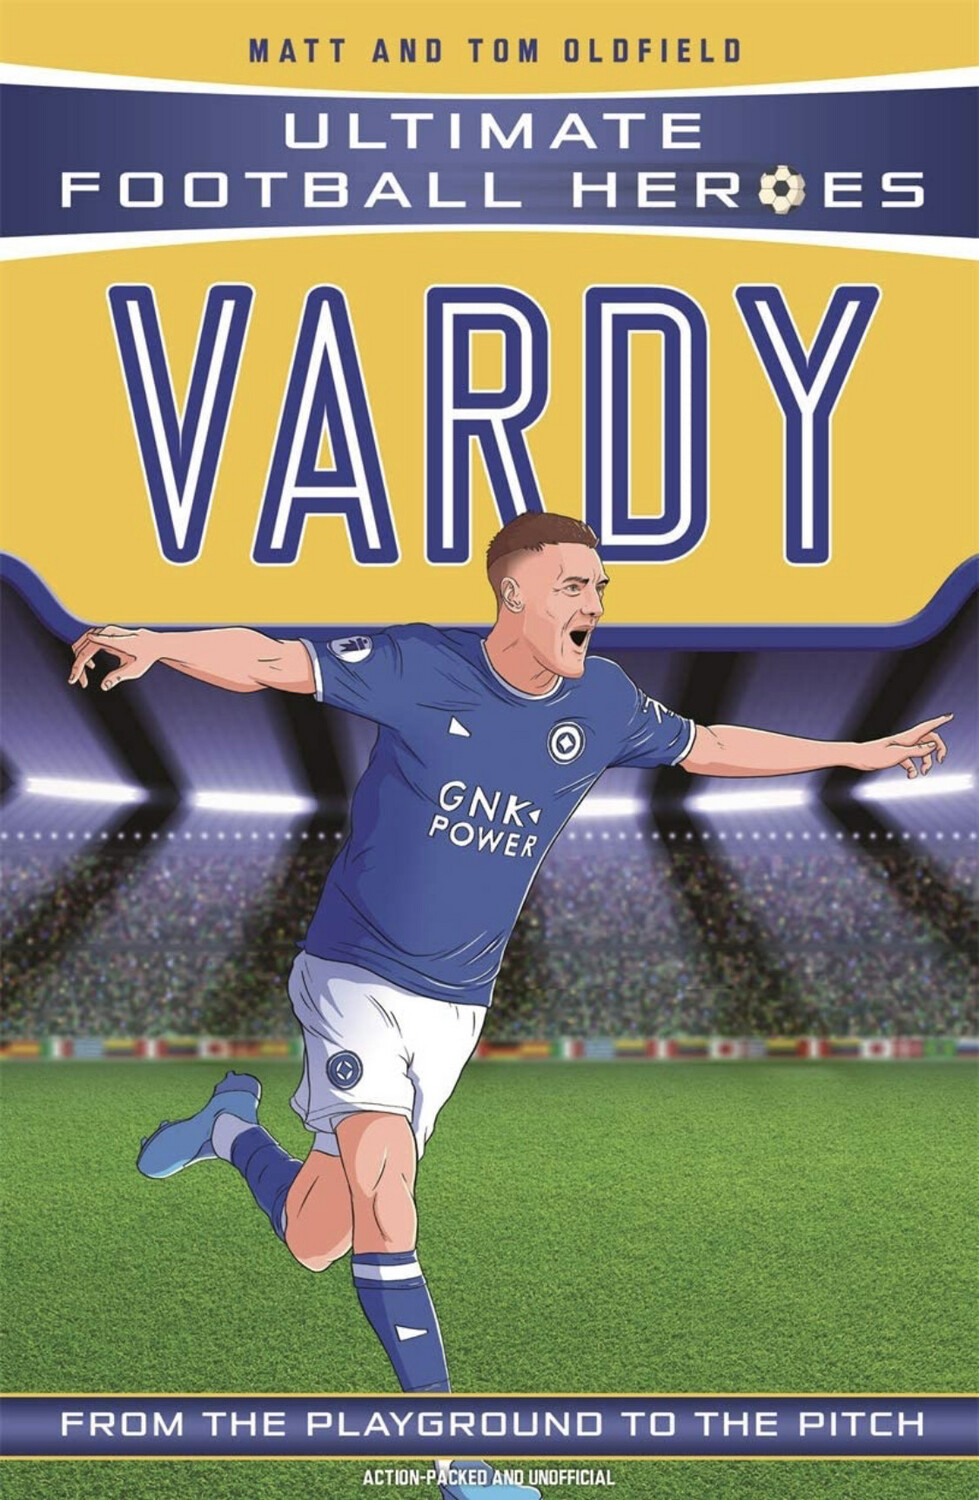 Ultimate Football Heroes: Vardy